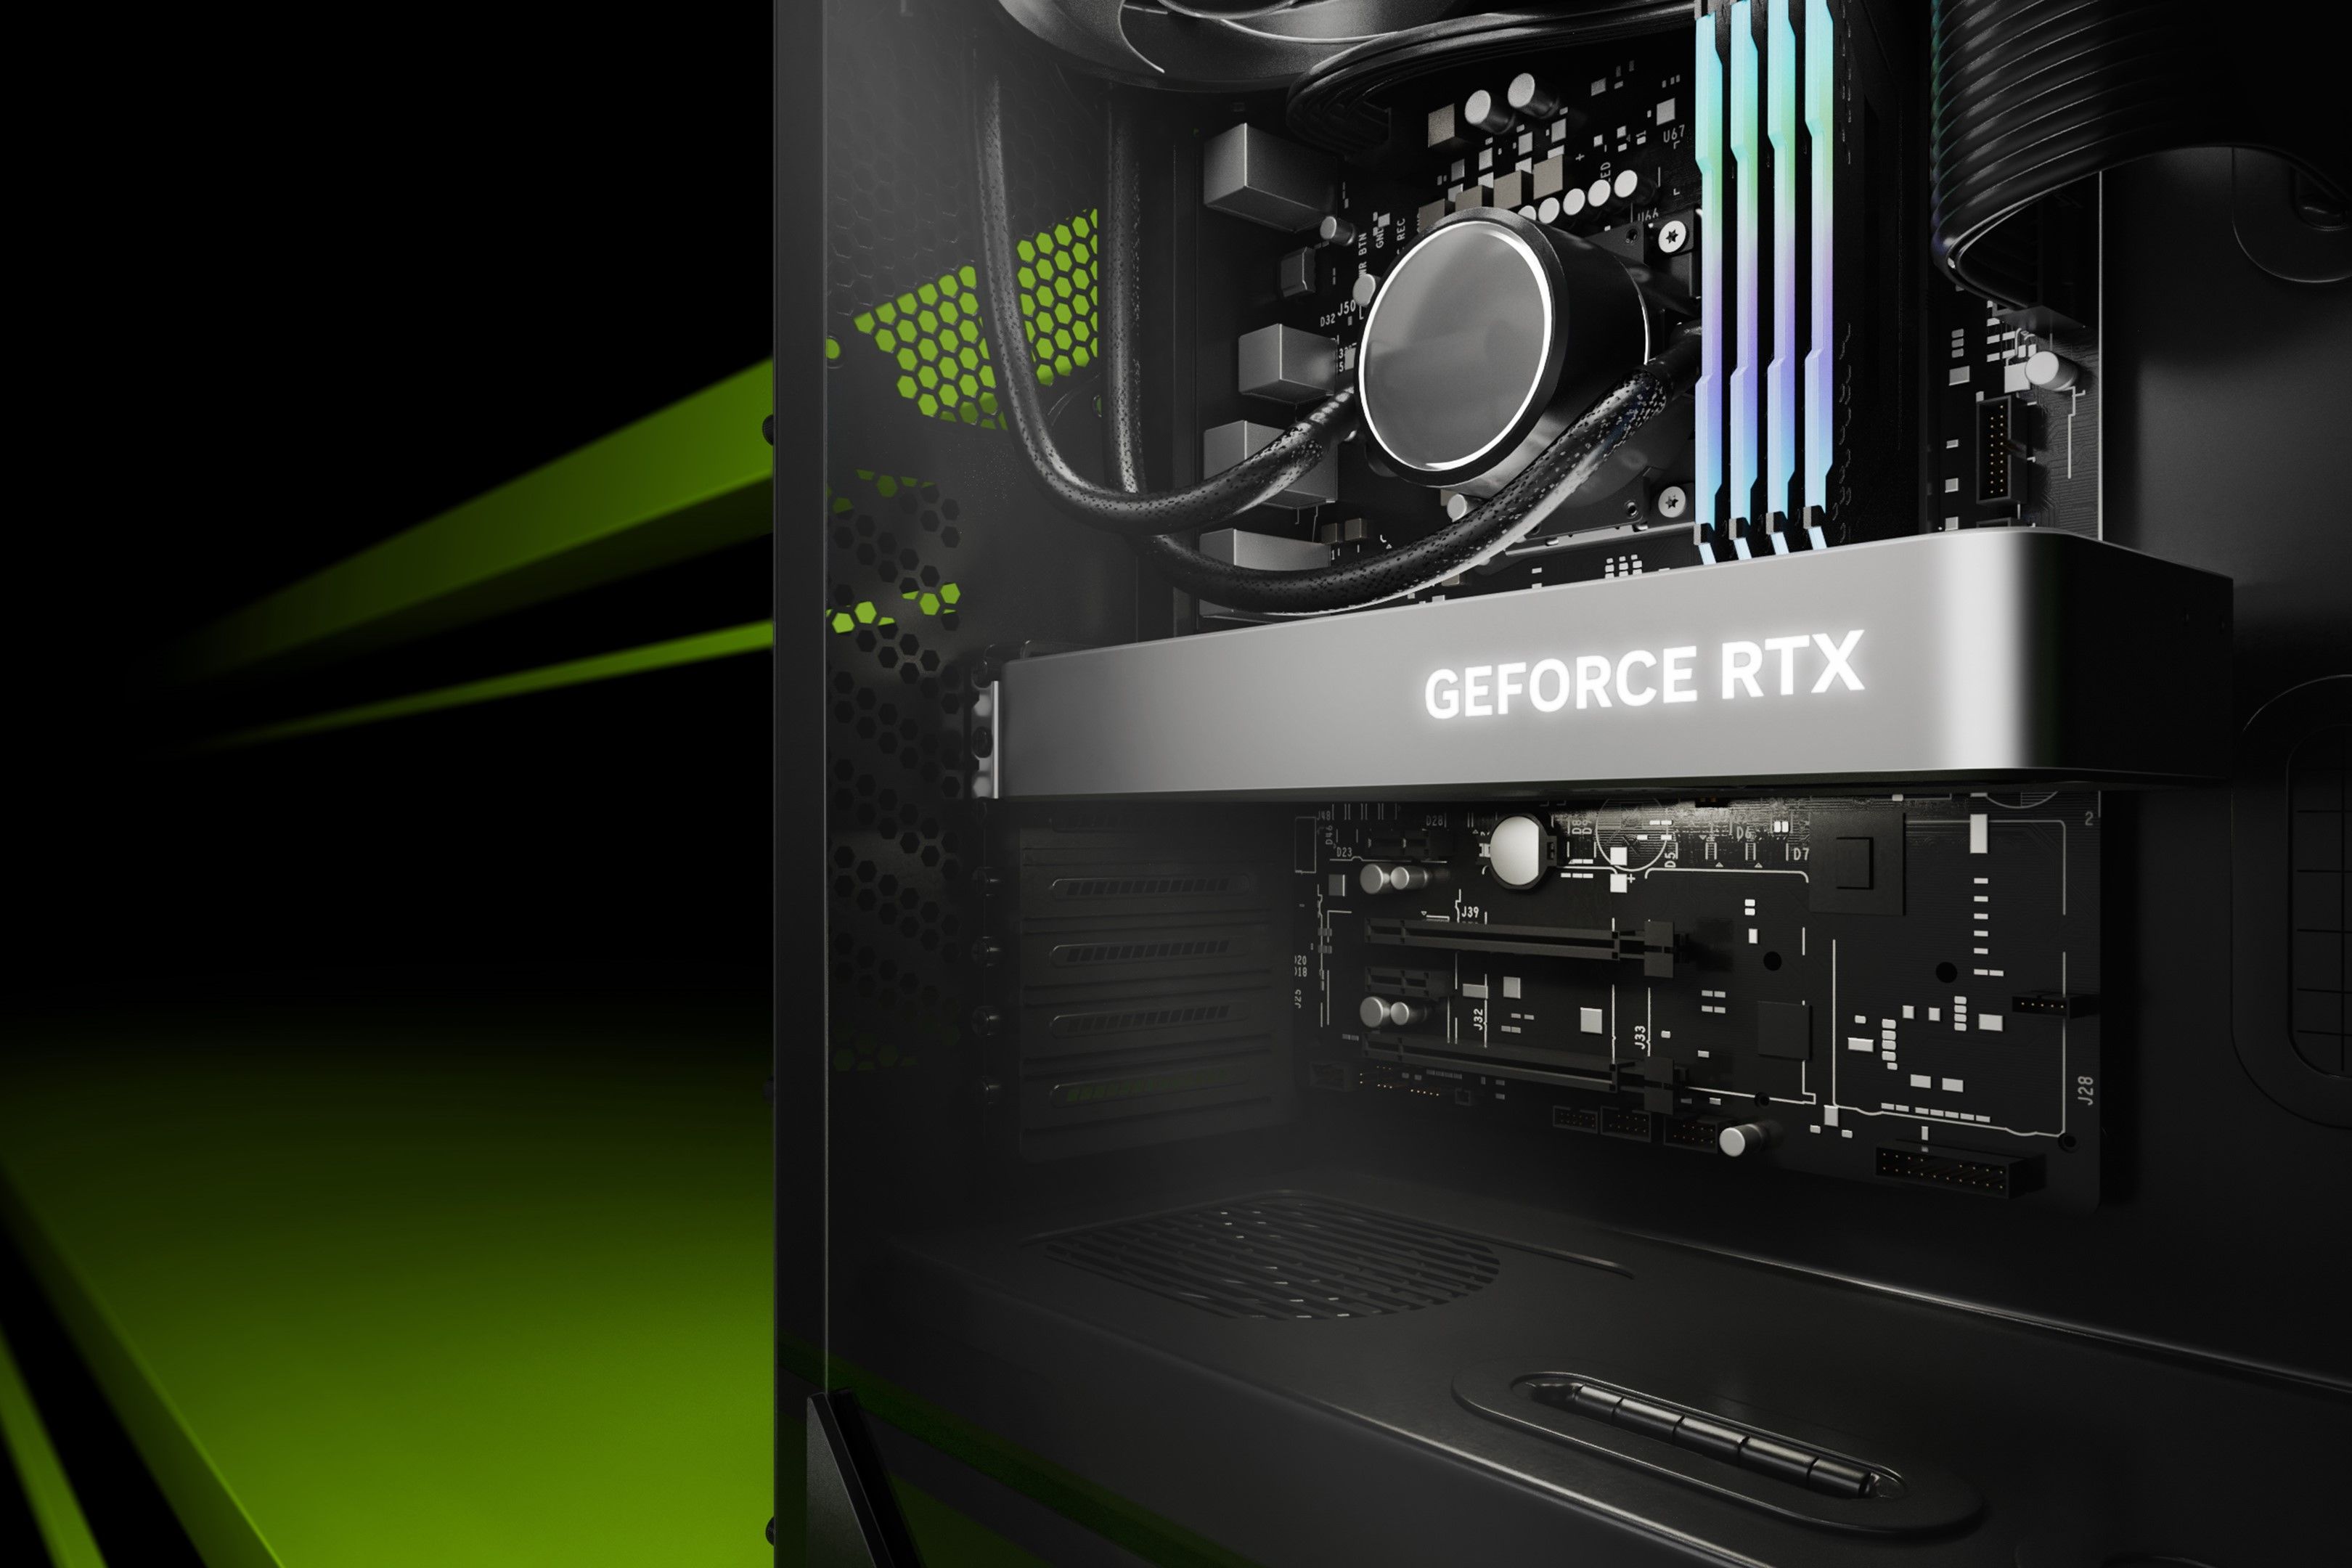 An Nvidia GeForce RTX GPU inside a desktop PC case